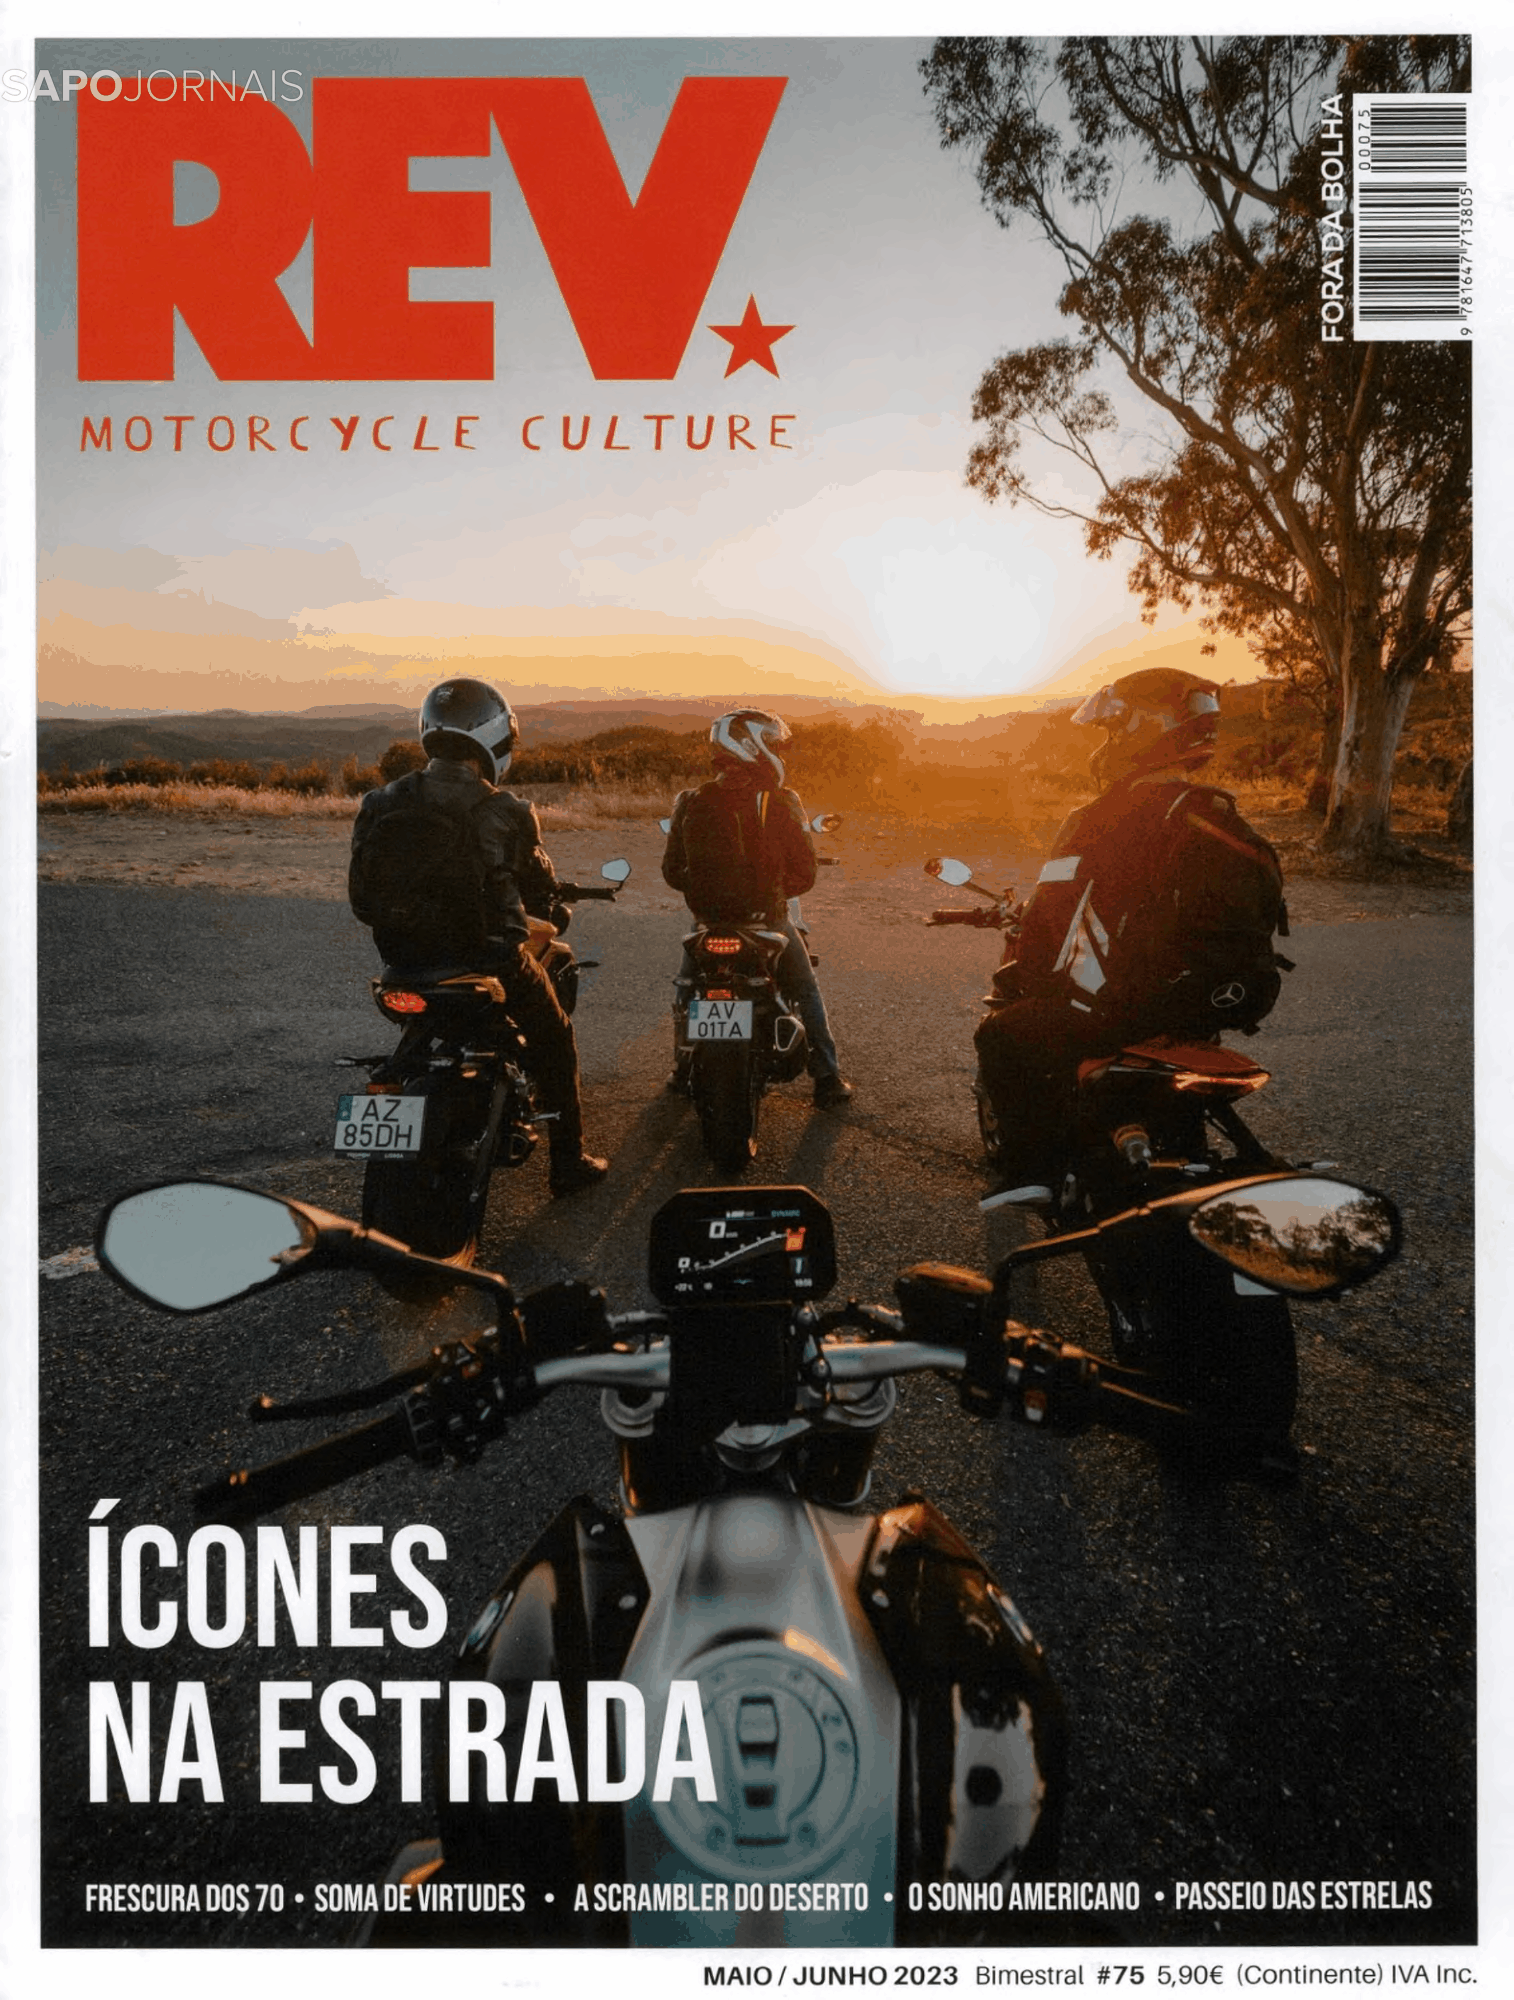 REV Motorcycle Culture